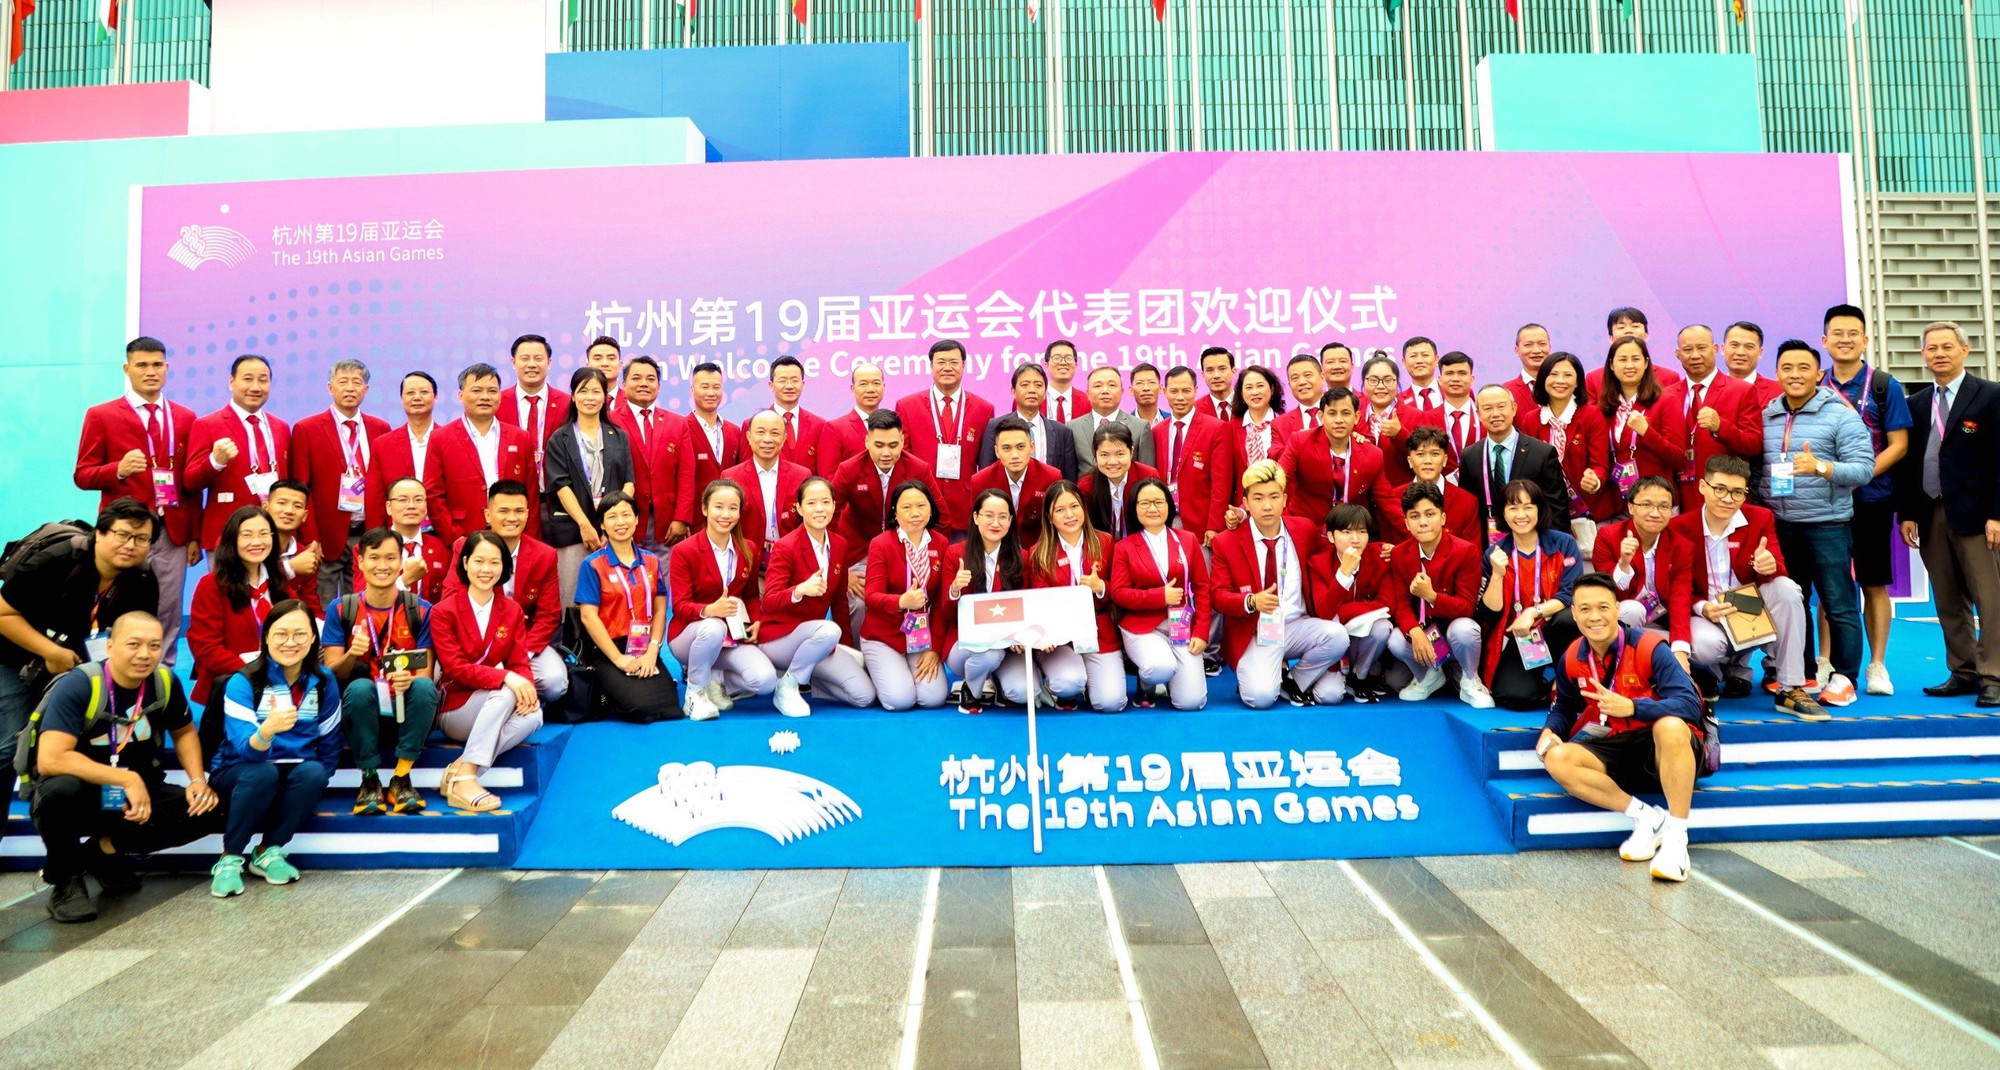 Quốc kỳ Việt Nam chính thức tung bay tại Asian Games 19 - Ảnh 6.